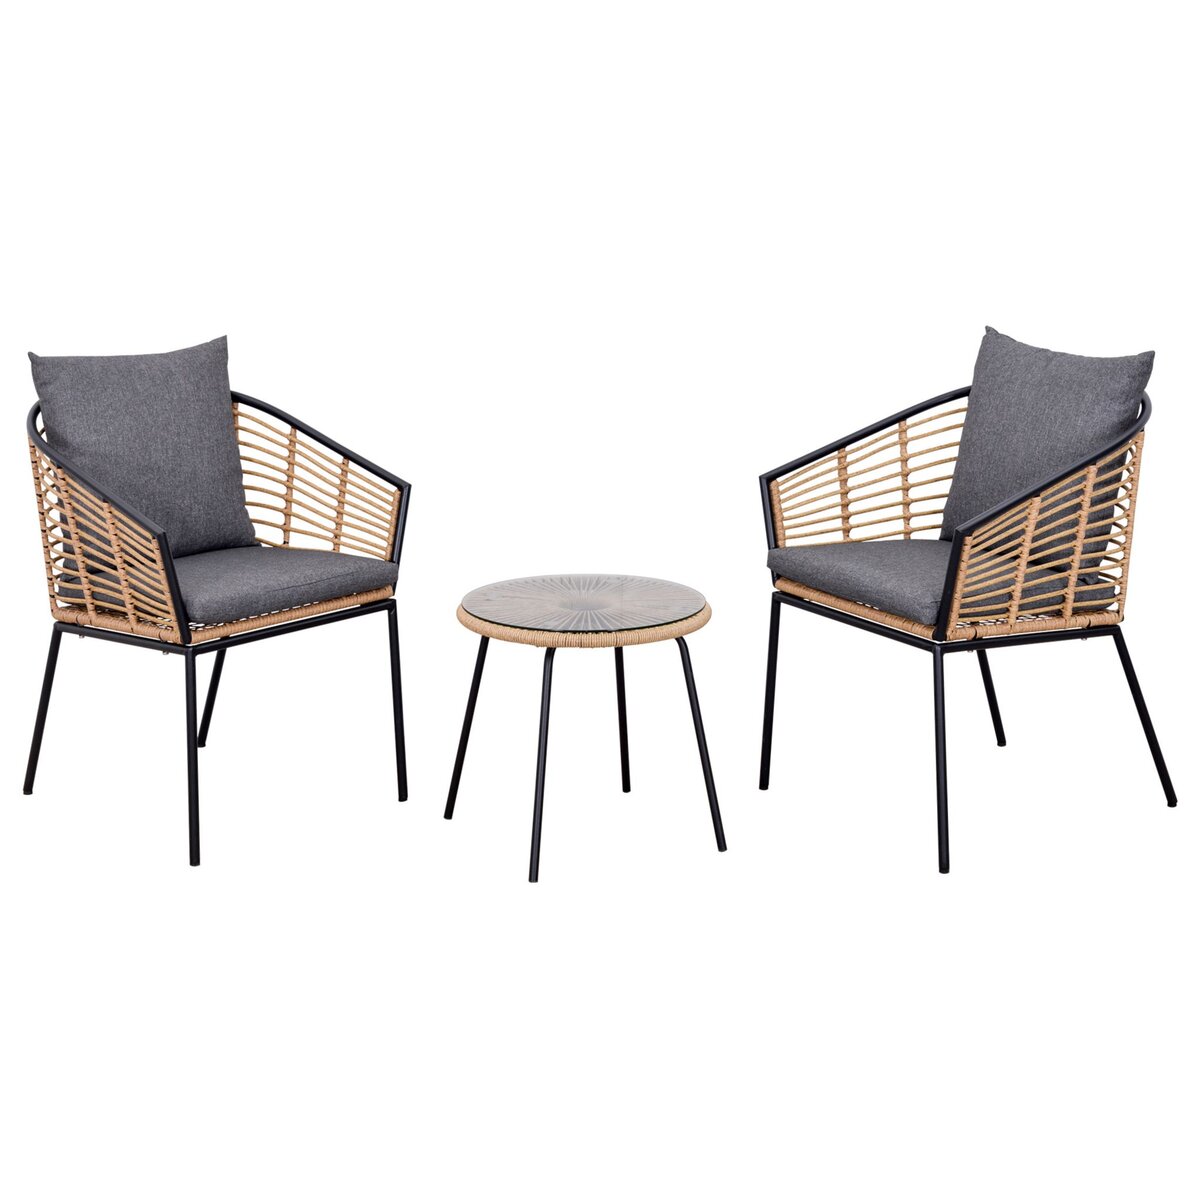 OUTSUNNY Outsunny Ensemble salon de jardin 3 pièces style exotique 2 fauteuils avec coussins gris + table basse résine tressée aspect bambou métal époxy noir